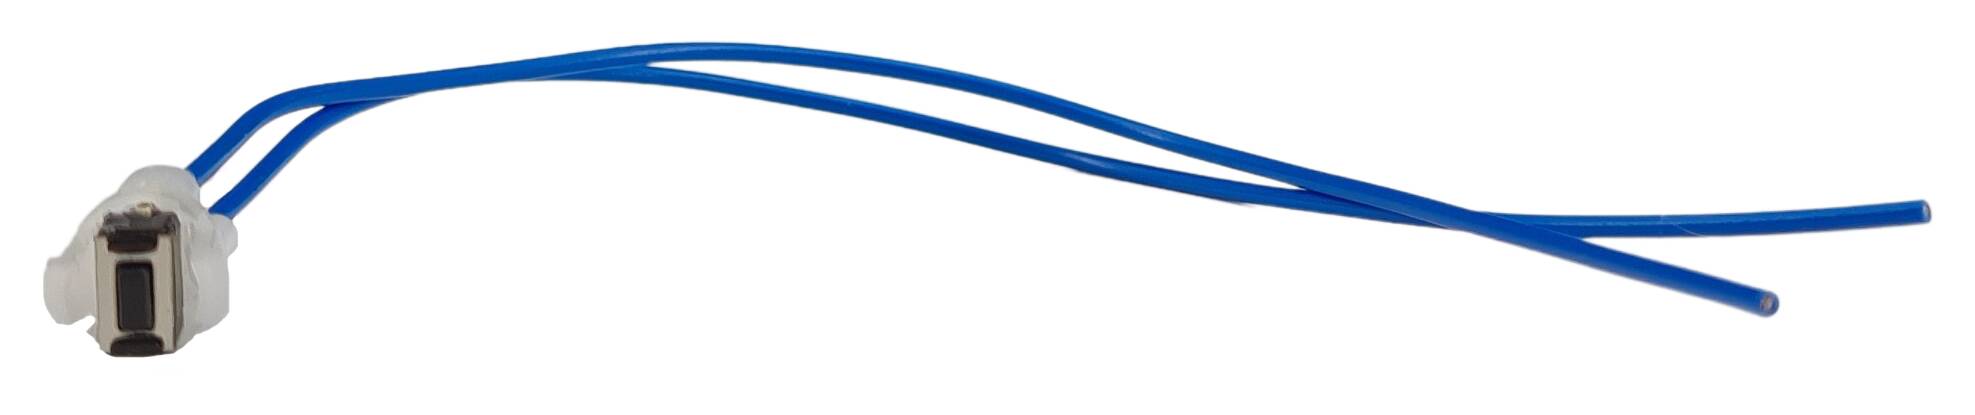 Taster f. Pouls-Dimmer m. Kabel 500 mm lg 10mm freies Ende verdrillt+verzinnt mit Kugel. blau